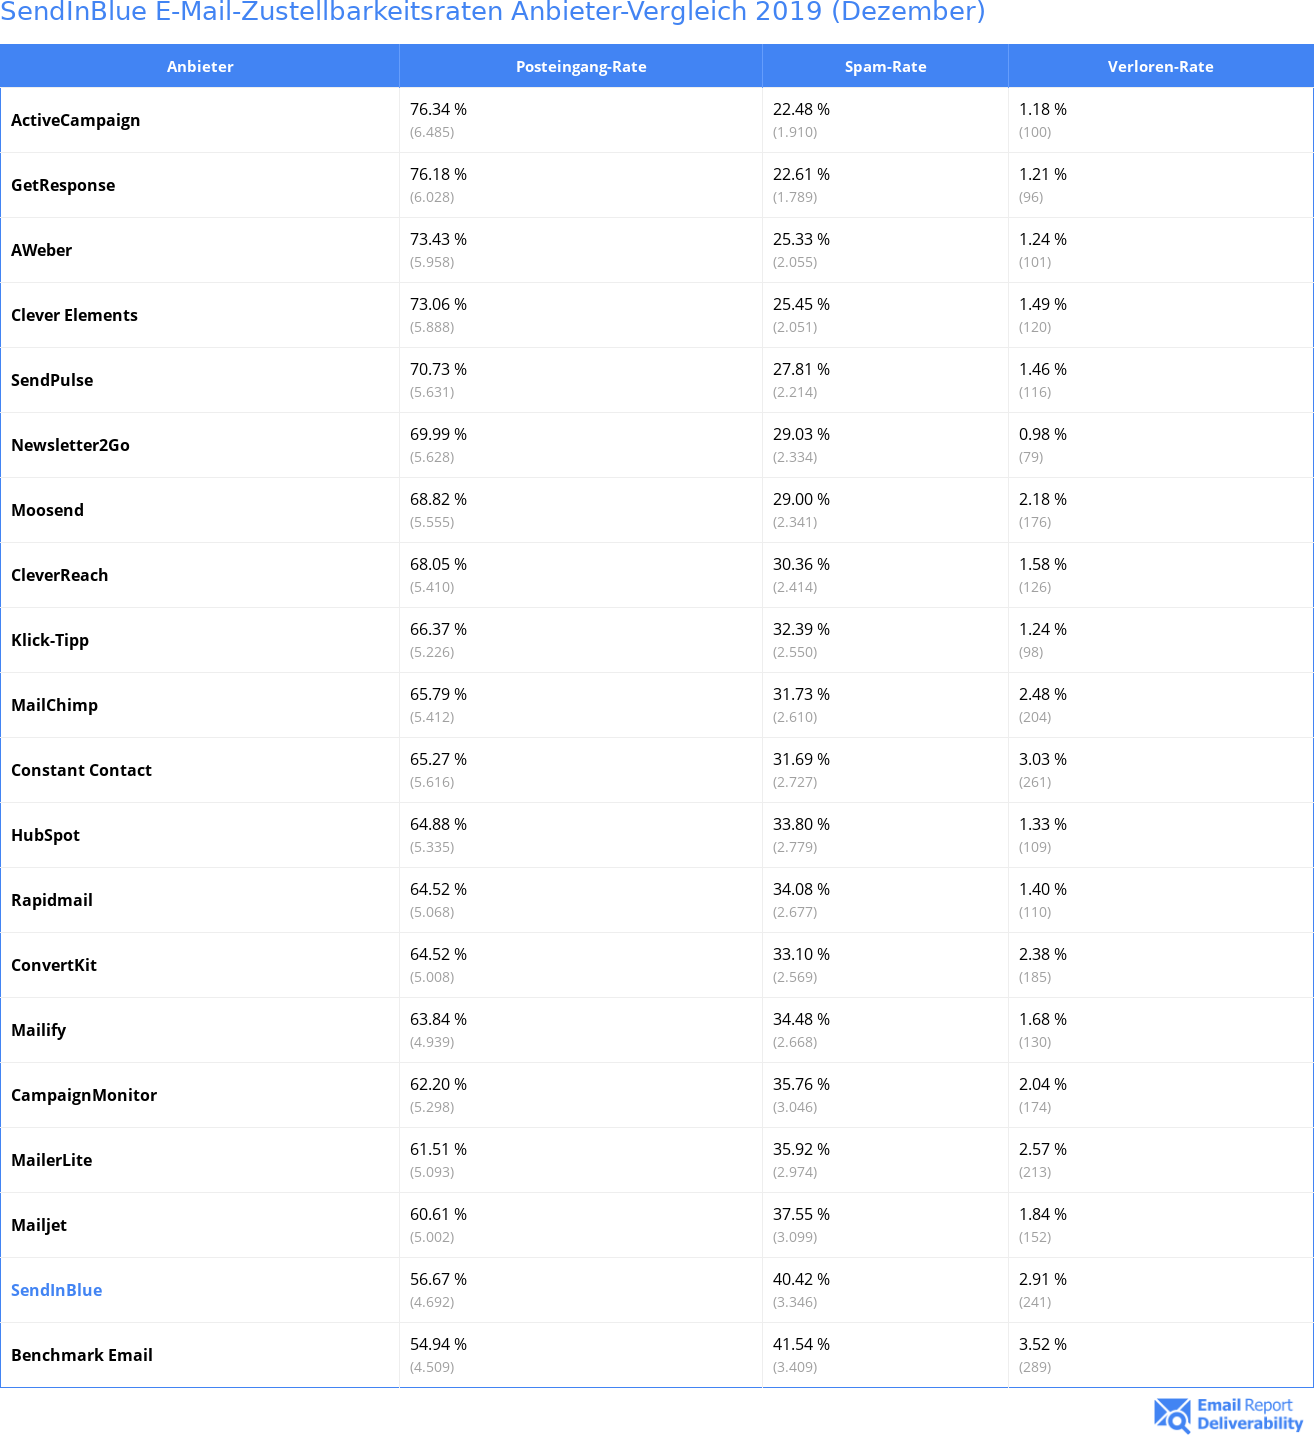 SendInBlue E-Mail-Zustellbarkeitsraten Anbieter-Vergleich 2019 (Dezember)